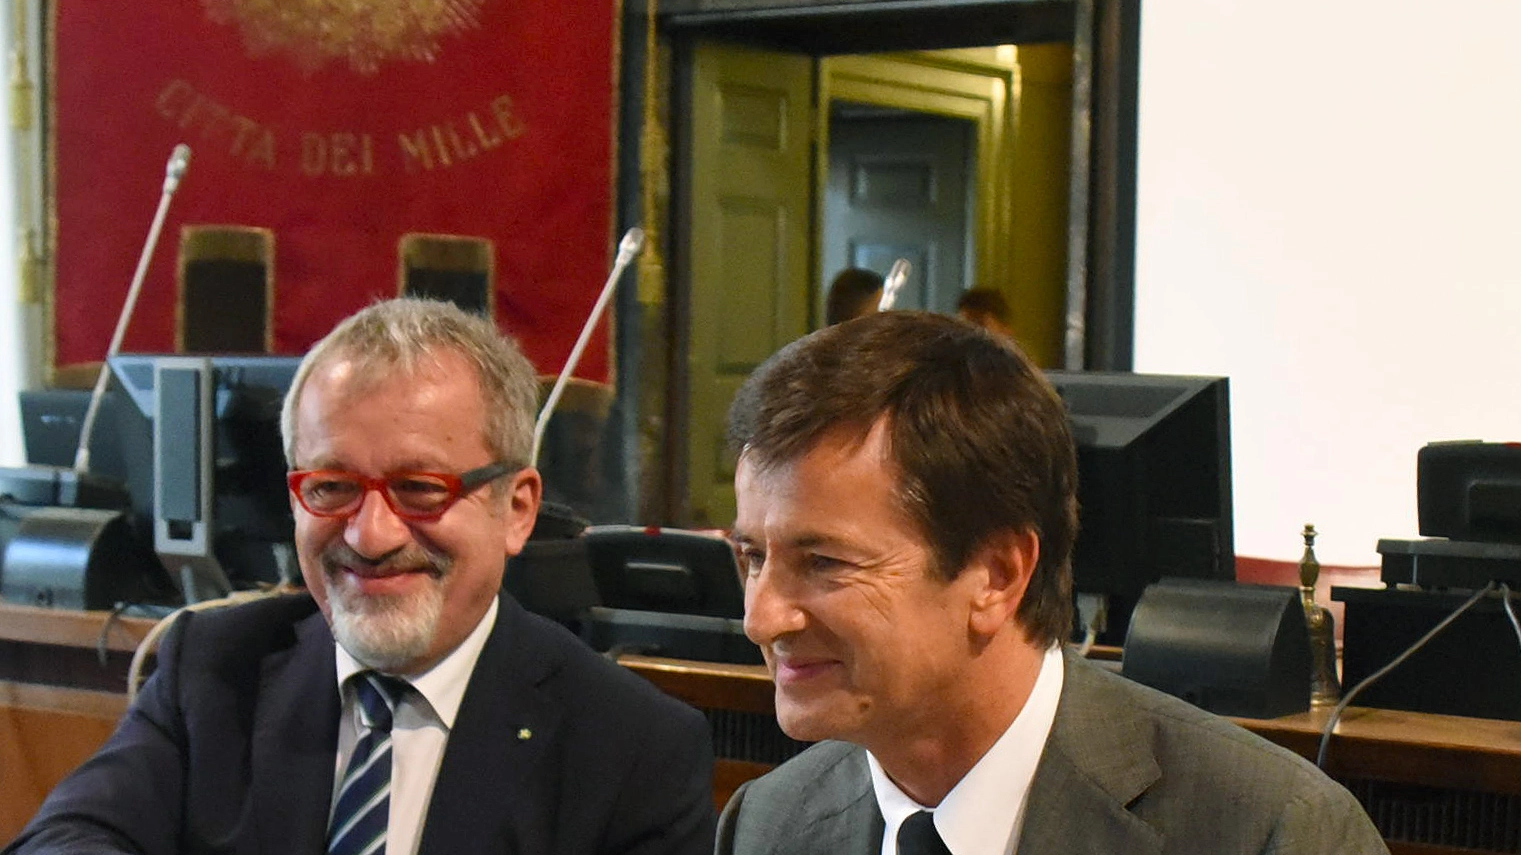 L'attuale sindaco di Bergamo e possibile sfidante dell'attuale governatore è critico: "Ci sono segnali del poco che ha fatto in questi anni"